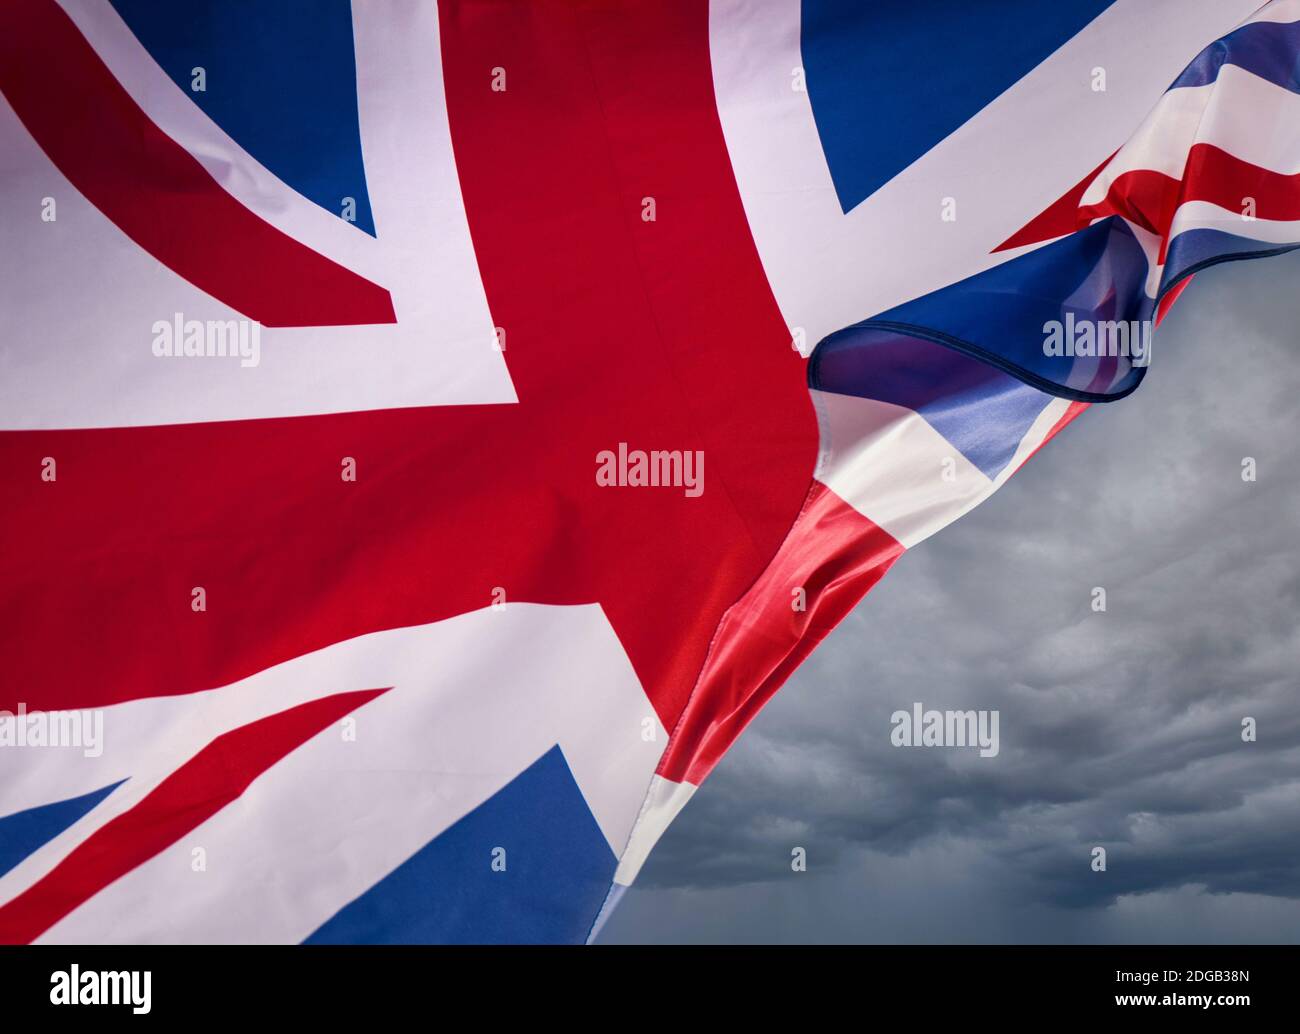 EU Brexit-Konzept UK Union Jack Flag fliegt mit einer Brise, die durchweht und einen düsteren Himmel hinter sich als Metapher für Probleme und Konzept für britische Grenzen aufdeckt... Stockfoto